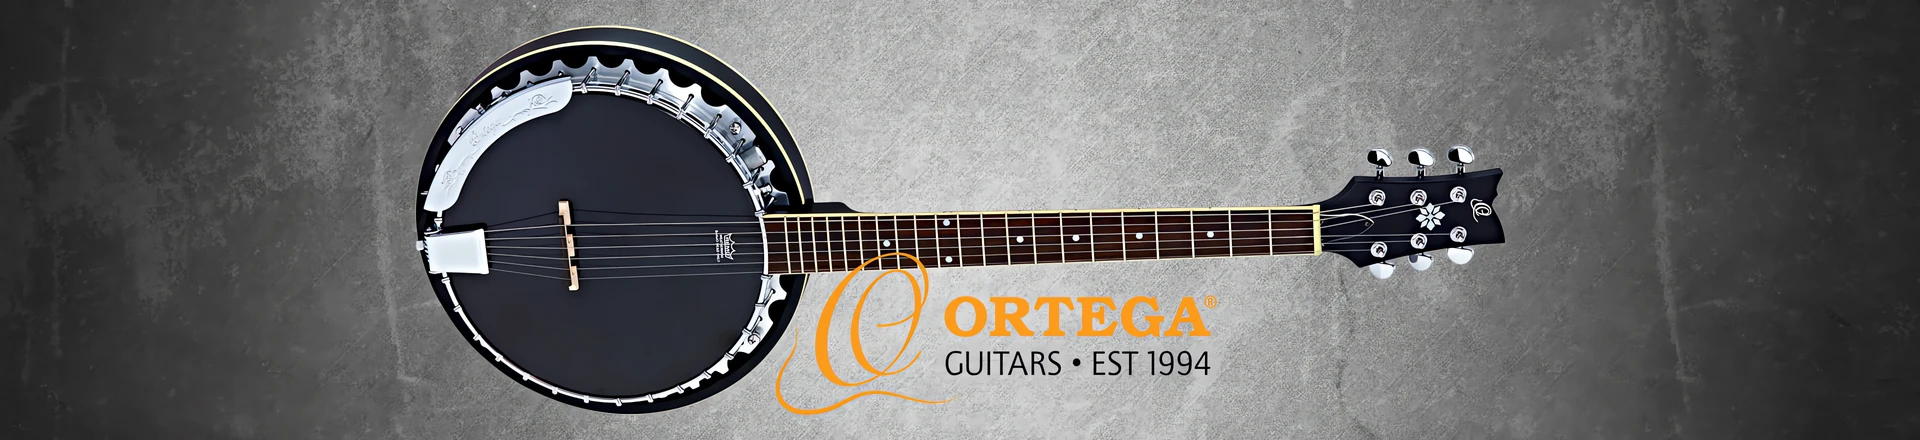 Ortega Raven - wreszcie banjo dla gitarzystów!